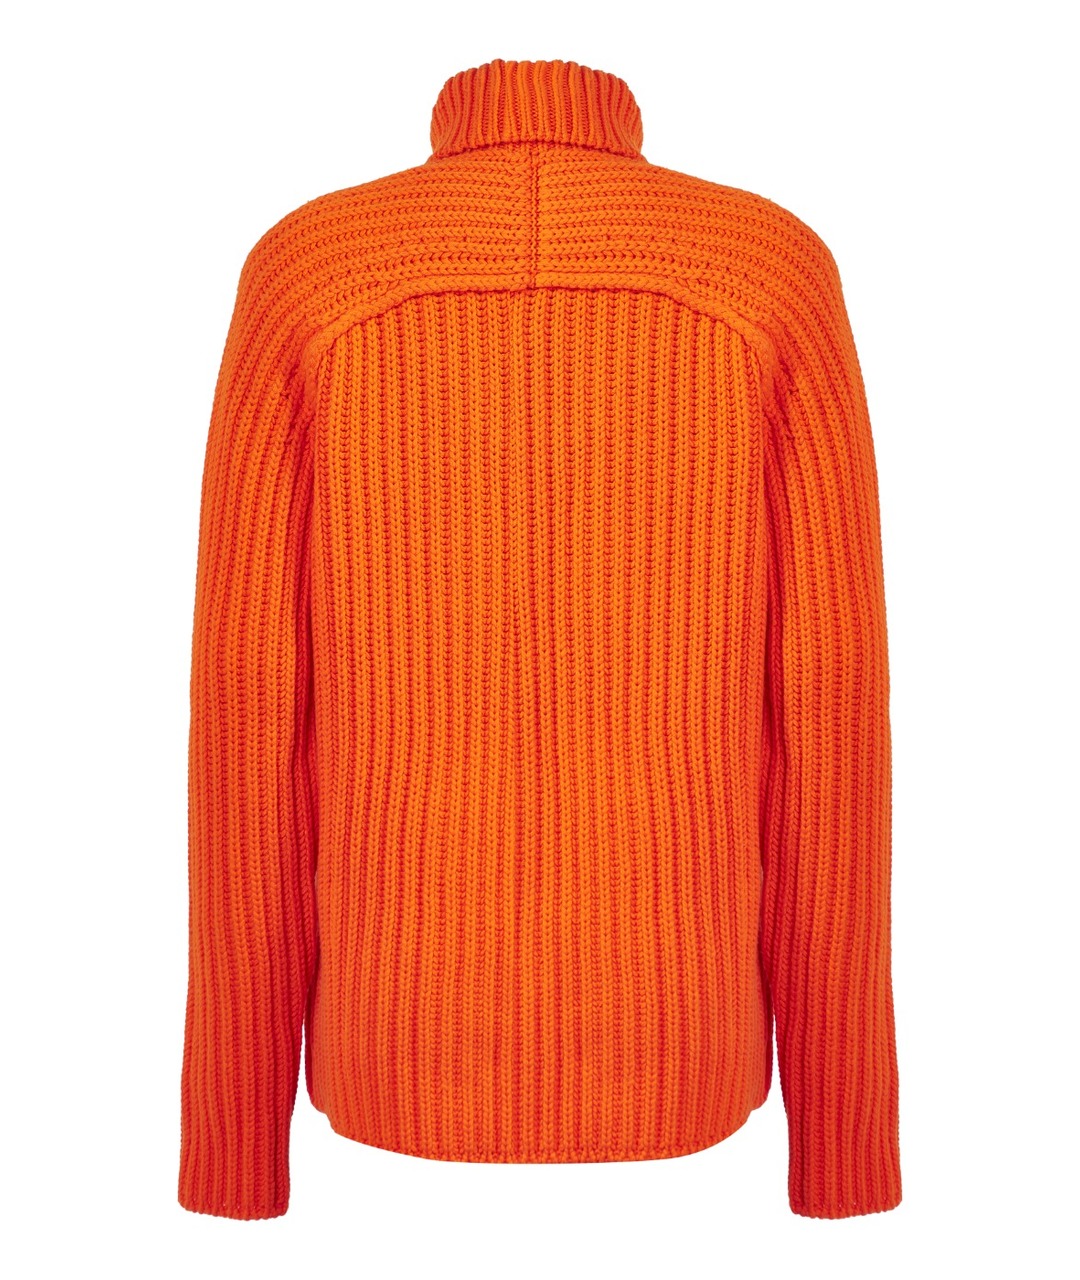 LOUIS VUITTON PRE-OWNED Оранжевый кашемировый джемпер / свитер, фото 2